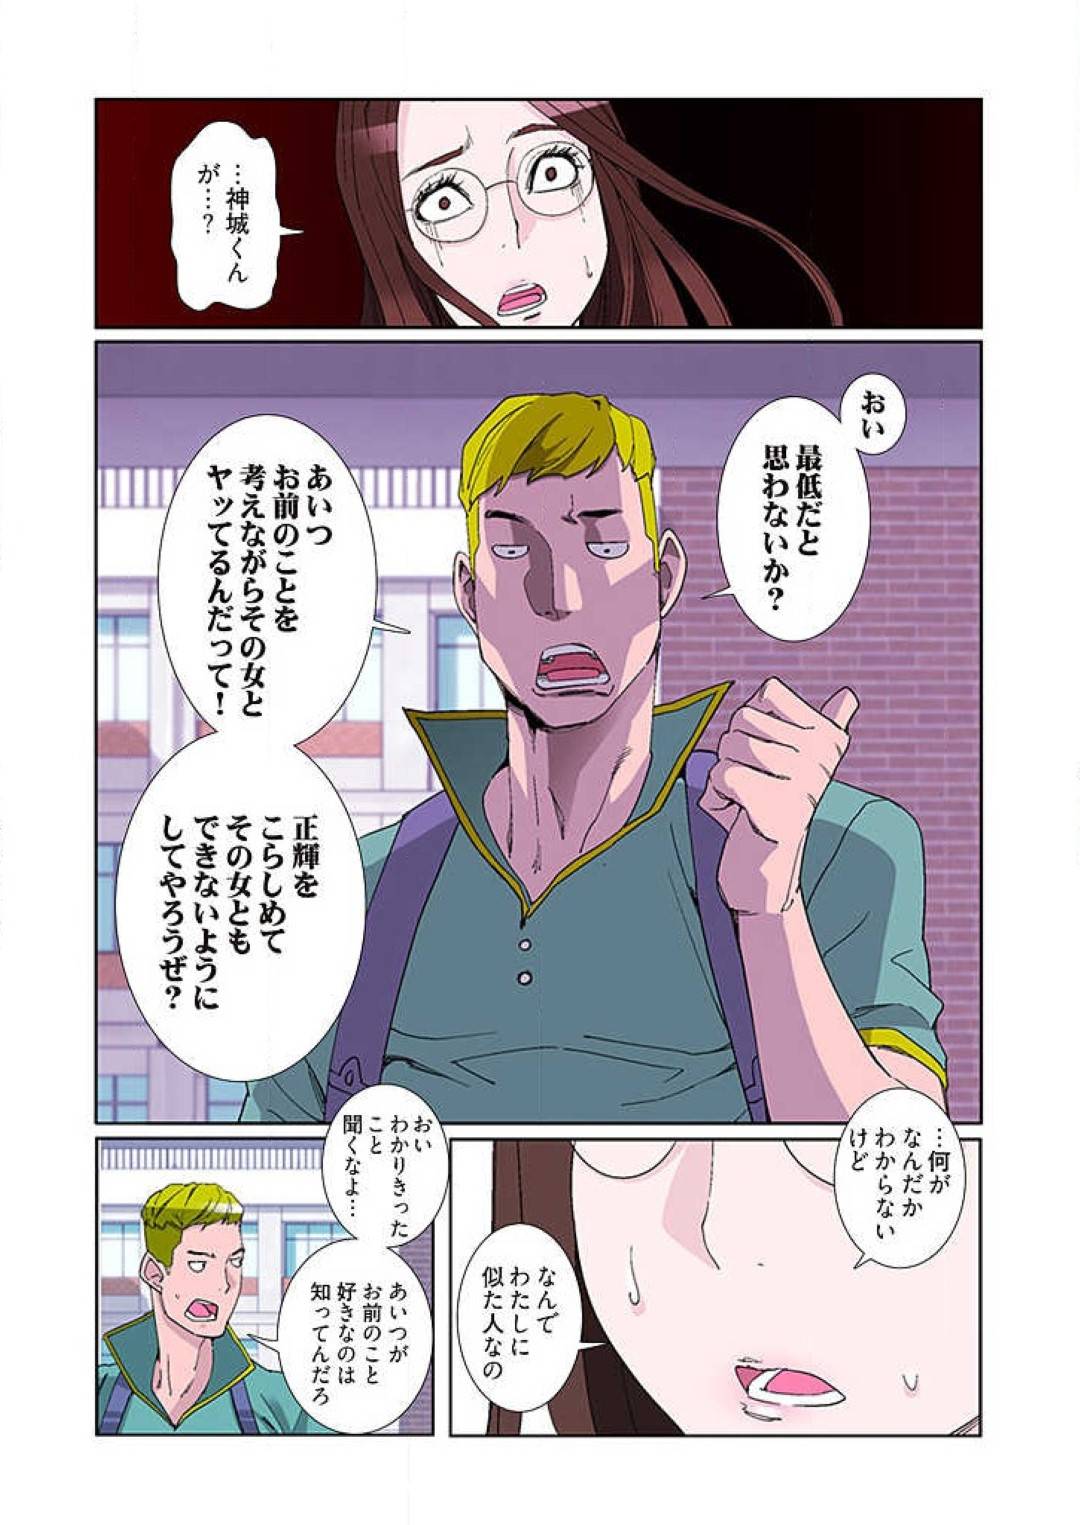 【エロ漫画】チャラ男と毎日のようにこっそりセックスするようになった宇宙人娘のピヨ。同居している大学生を見送った後、彼女は彼を部屋へと招き入れてはハードファックしまくる。